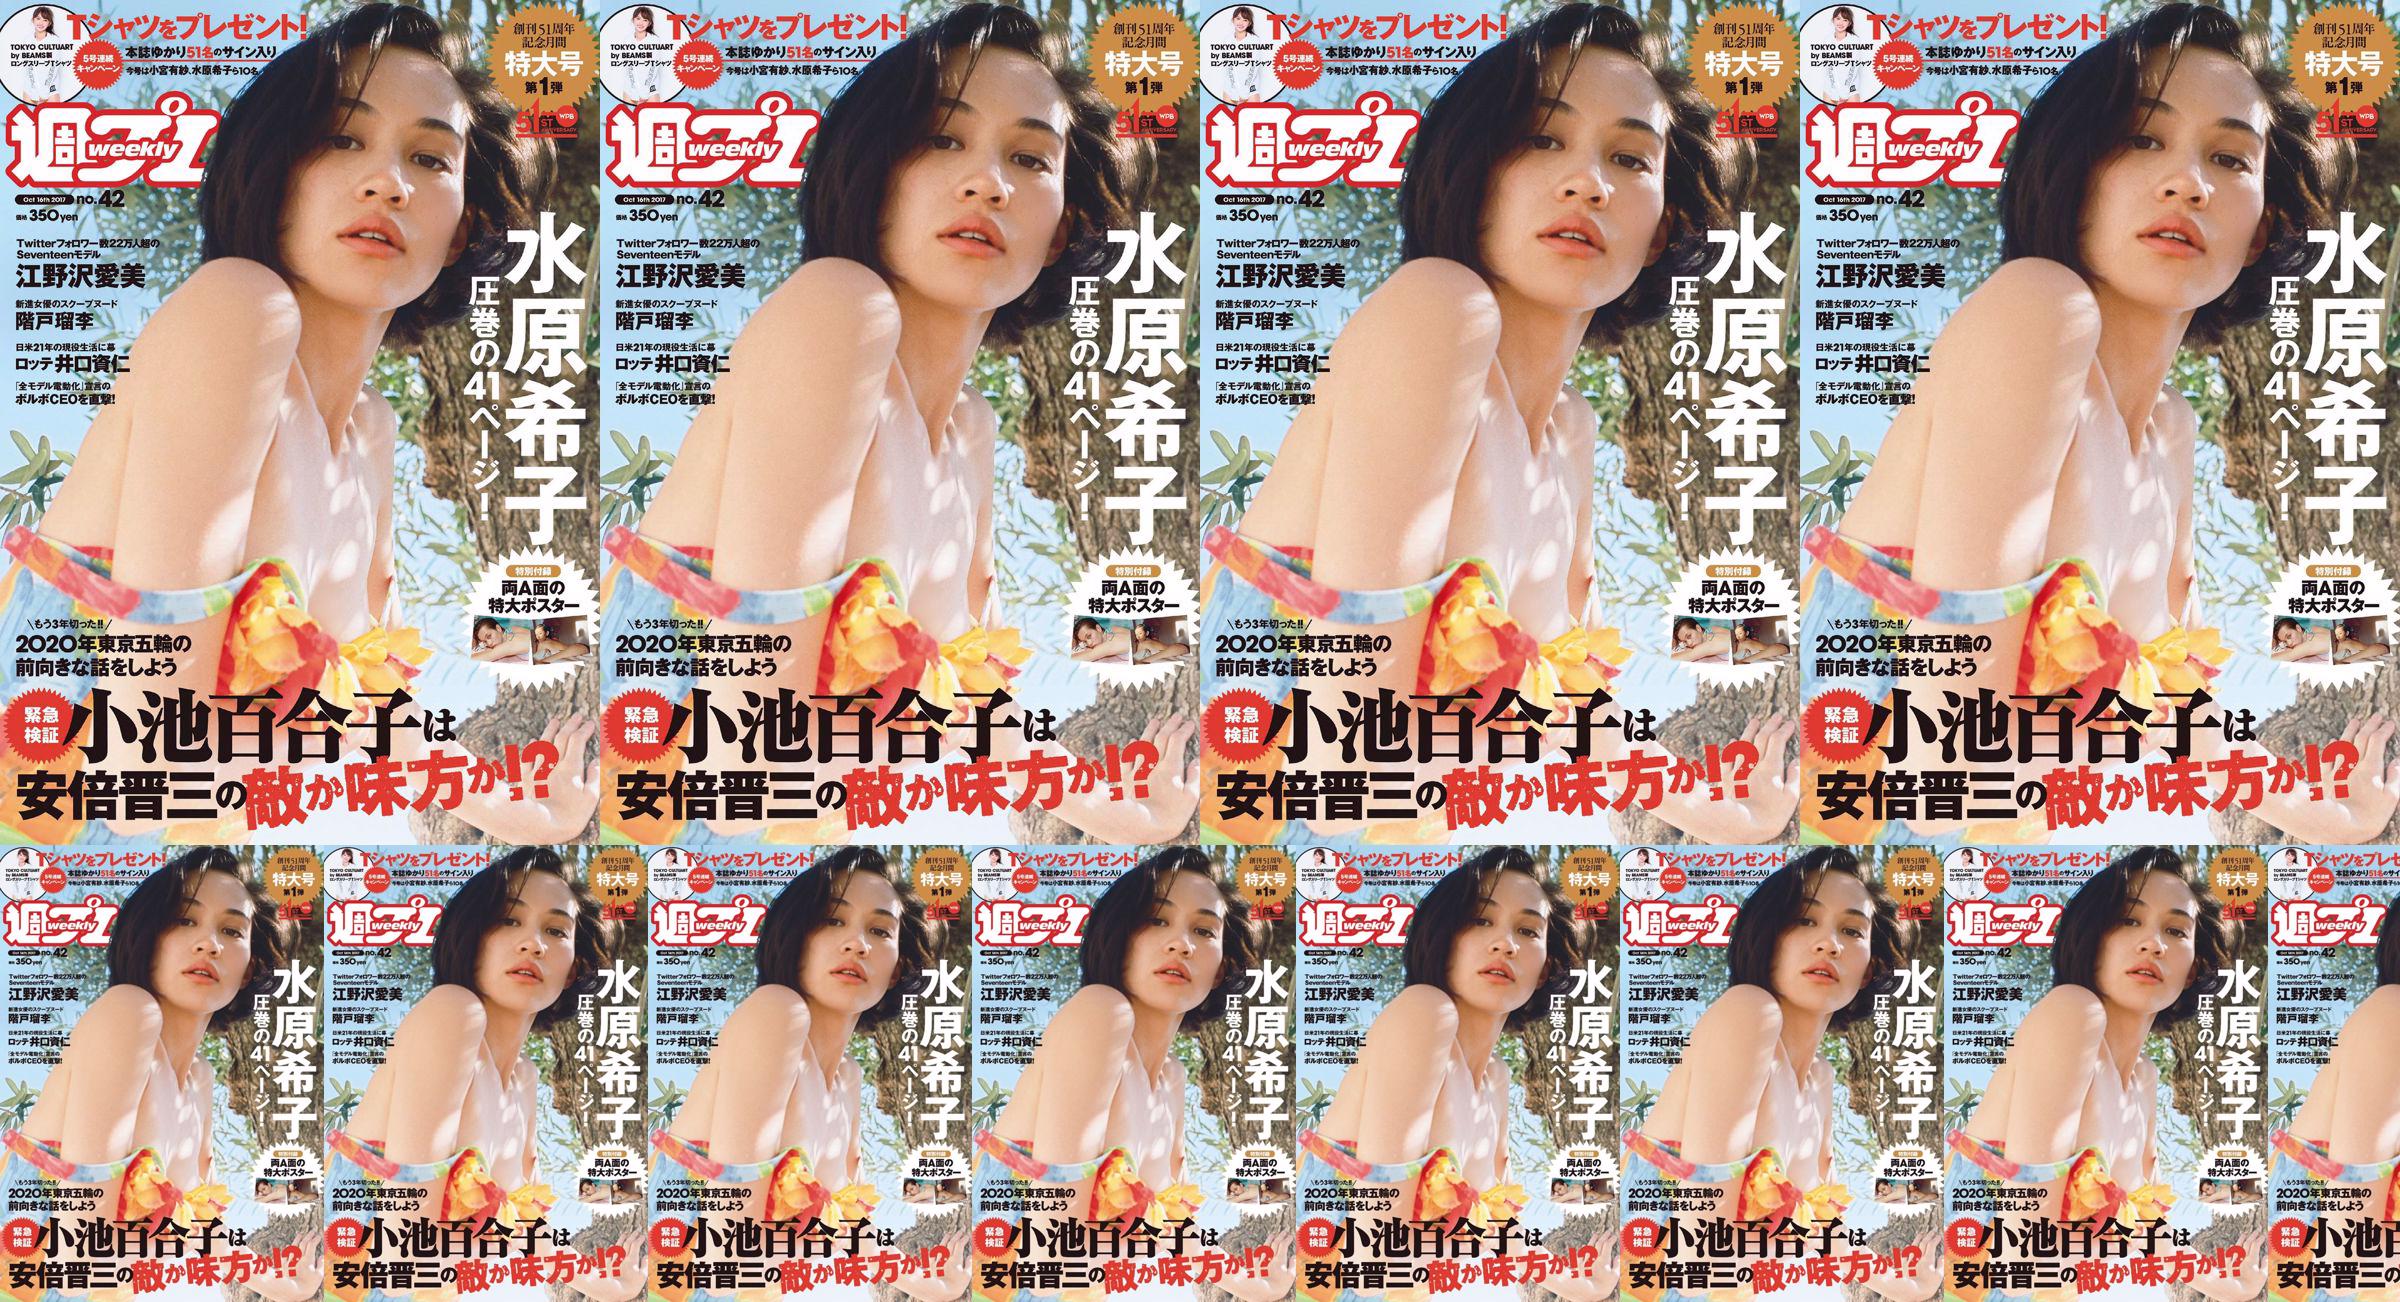 Kiko Mizuhara Manami Enosawa Serina Fukui Miu Nakamura Ruri Shinato [Weekly Playboy] 2017 No.42 Photo Magazine No.d7980a Pagina 10